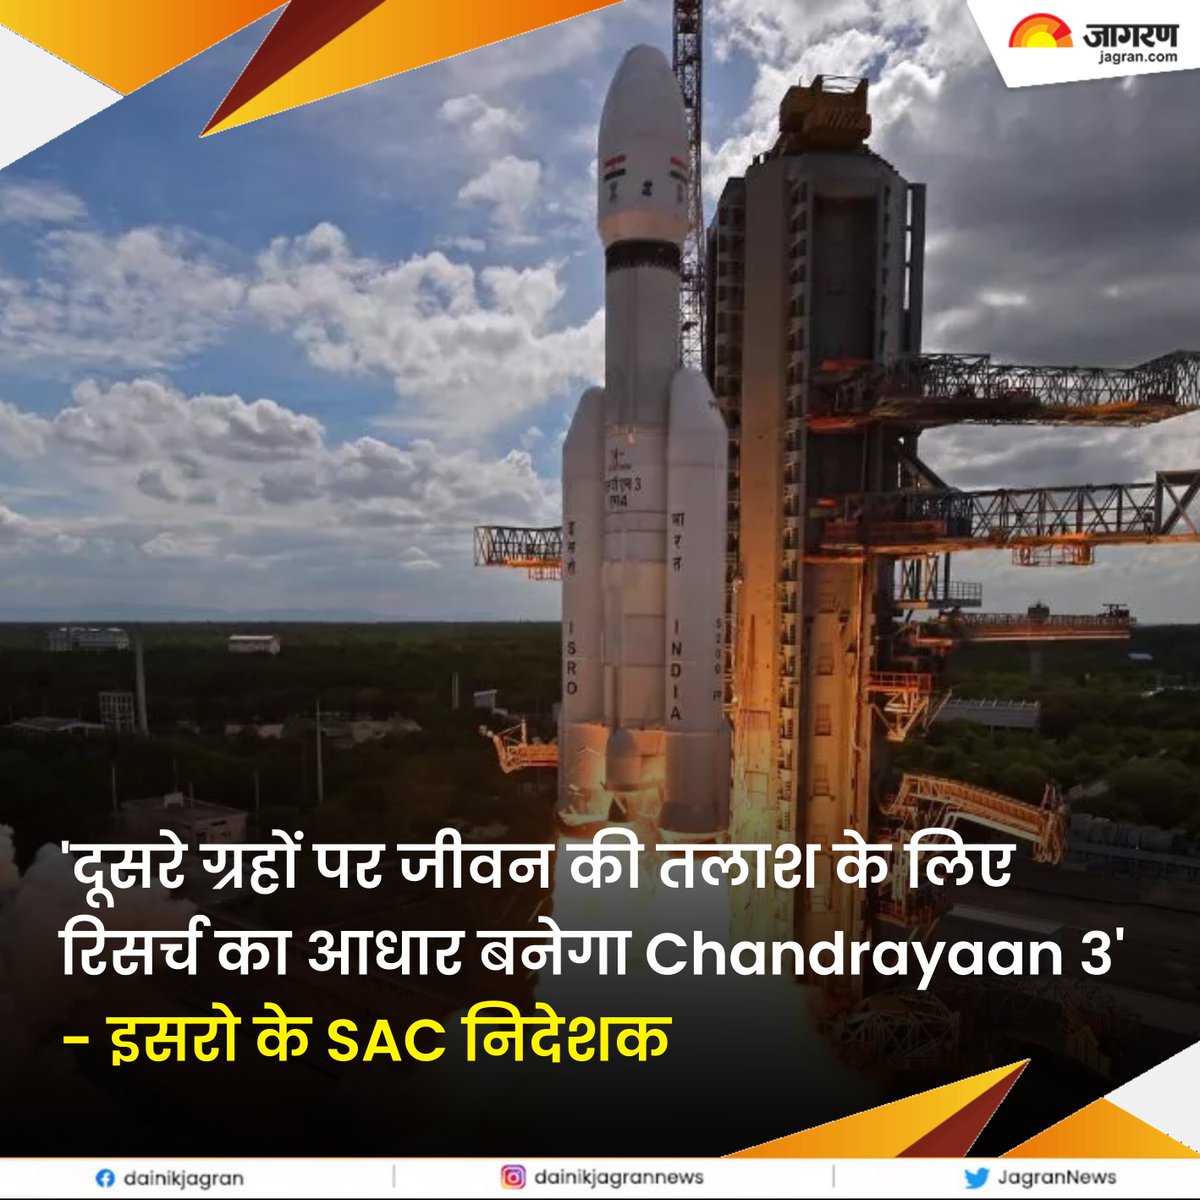 Exclusive: 'दूसरे ग्रहों पर जीवन की तलाश के लिए रिसर्च का आधार बनेगा Chandrayaan 3' - इसरो के SAC निदेशक - bitly.ws/LWT6

#Chandrayaan3 #ISRO #SpaceResearch #SpaceExploration